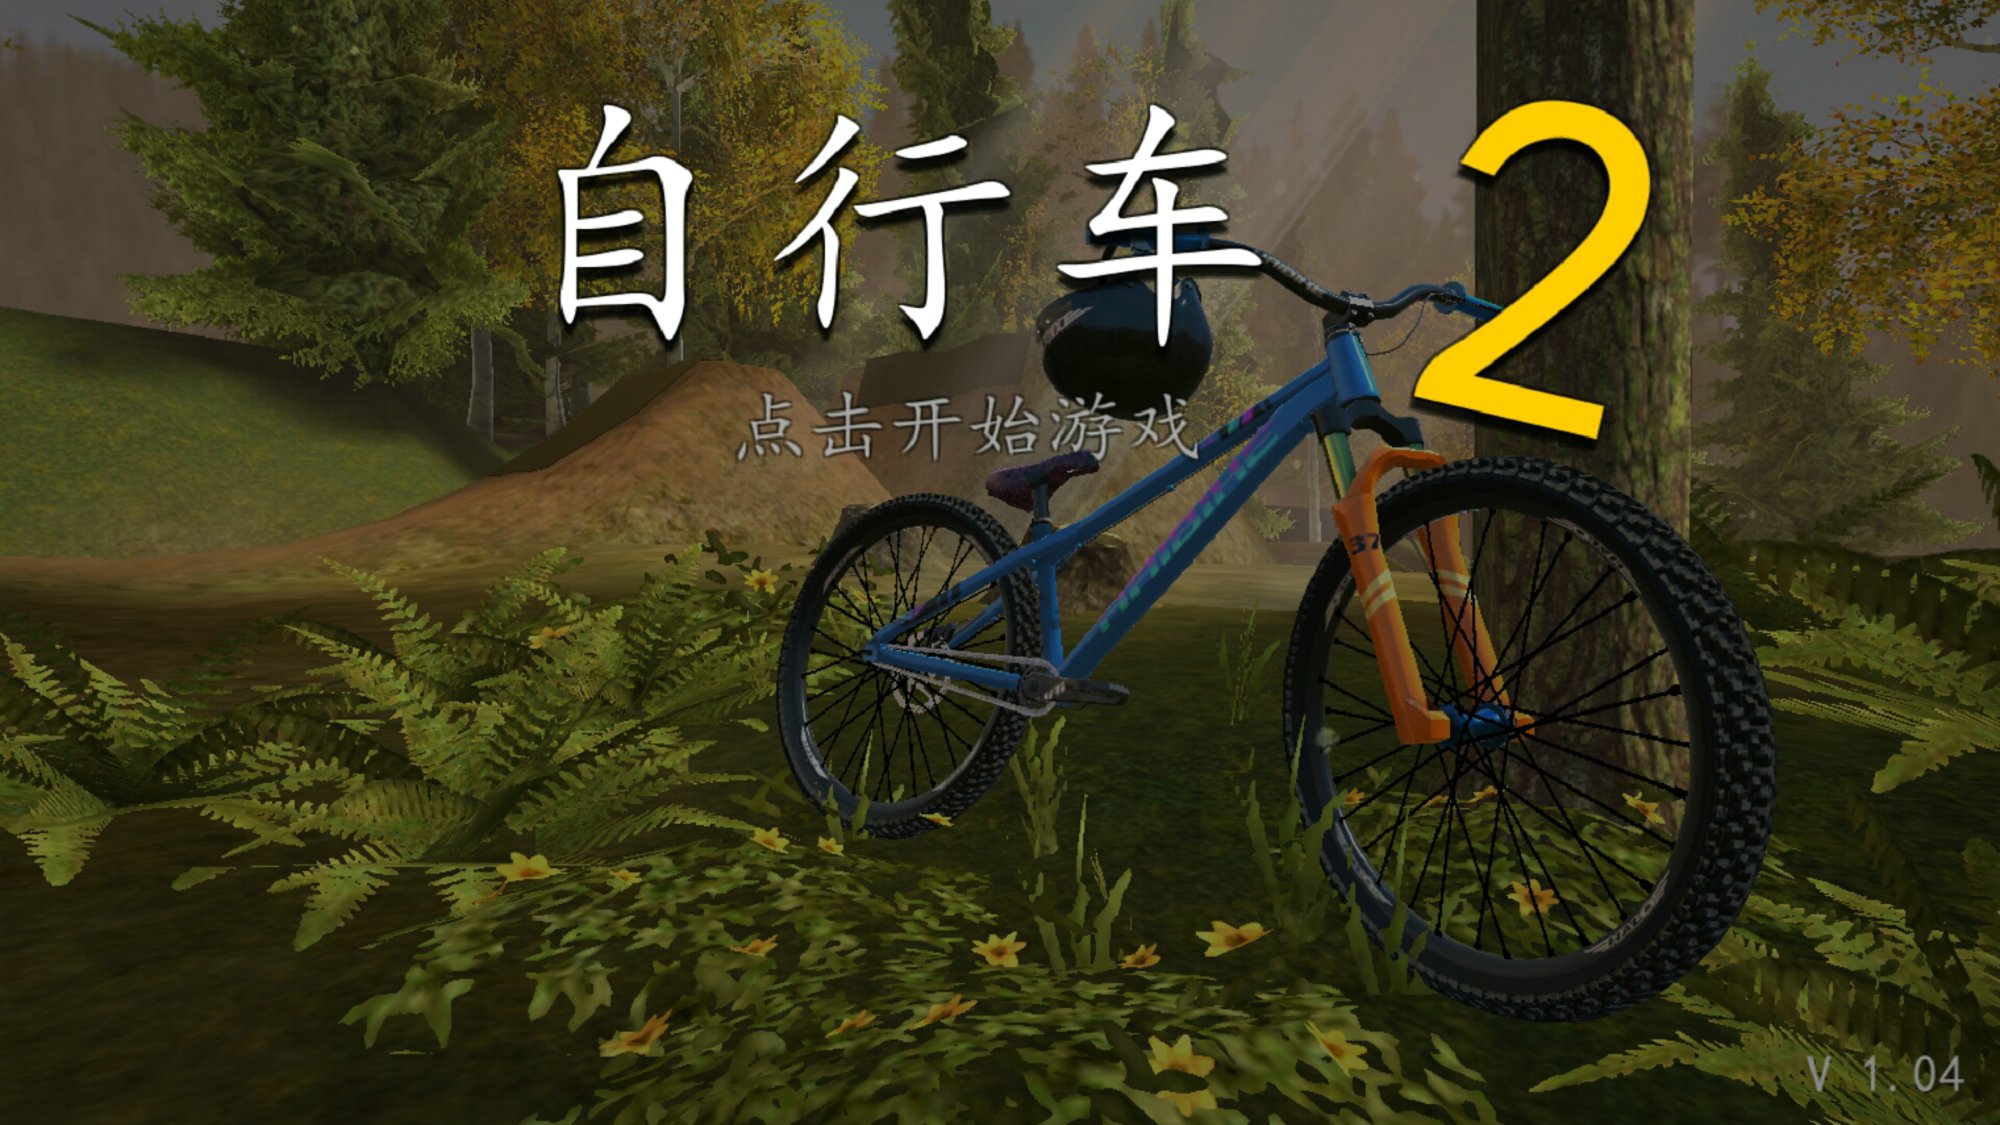 极限挑战自行车2 V1.04 安卓版